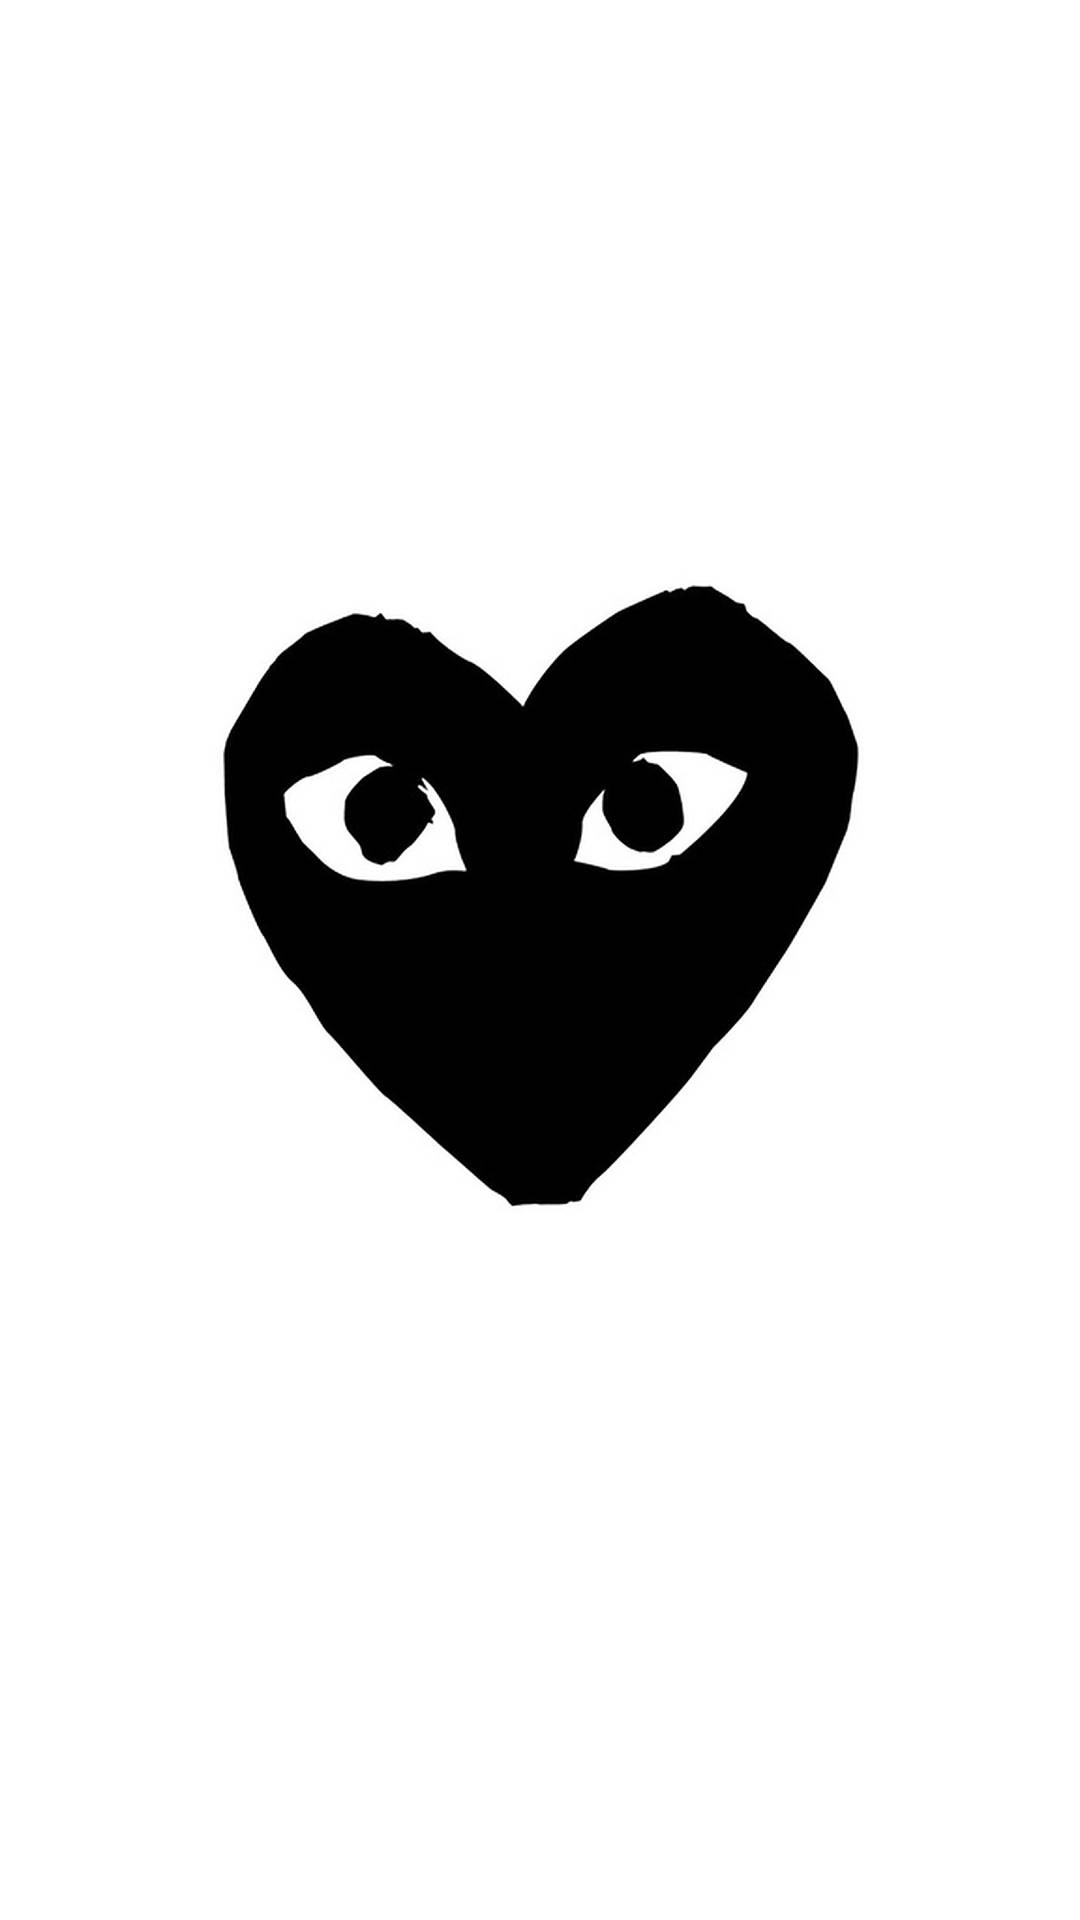 Black Heart CDG Brand Wallpaper